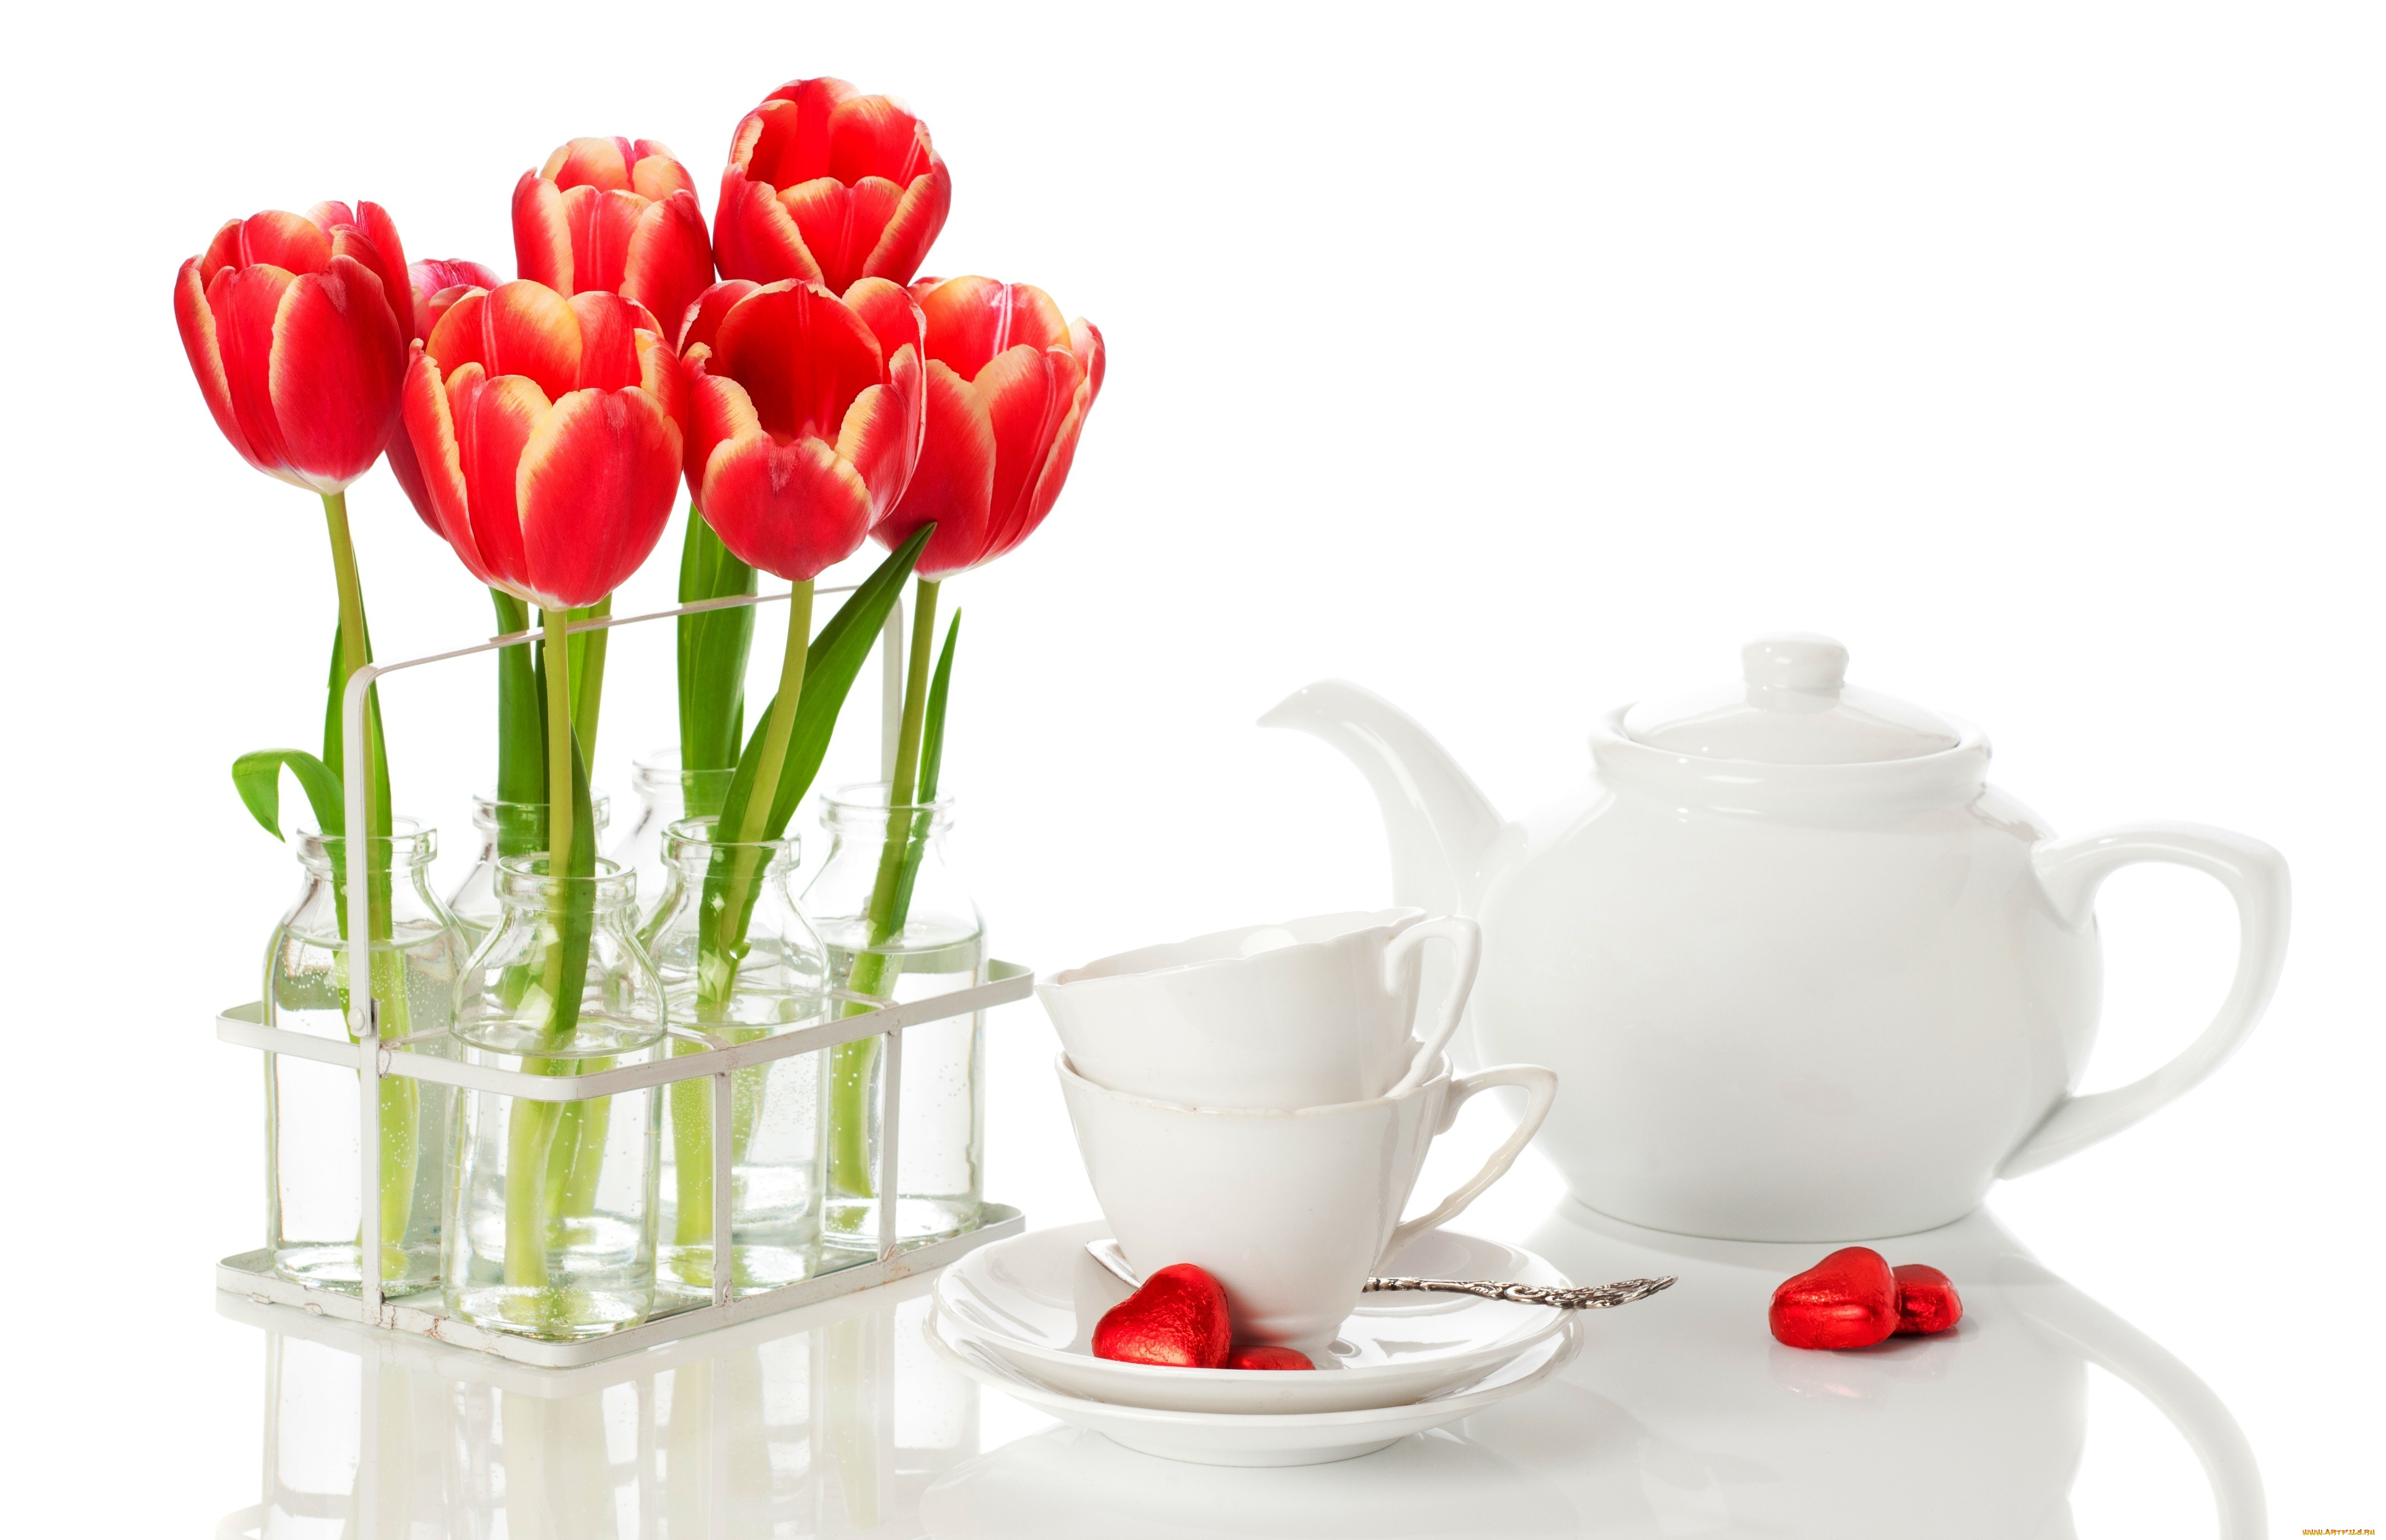 С добрым утром тюльпаны с пожеланиями красивые